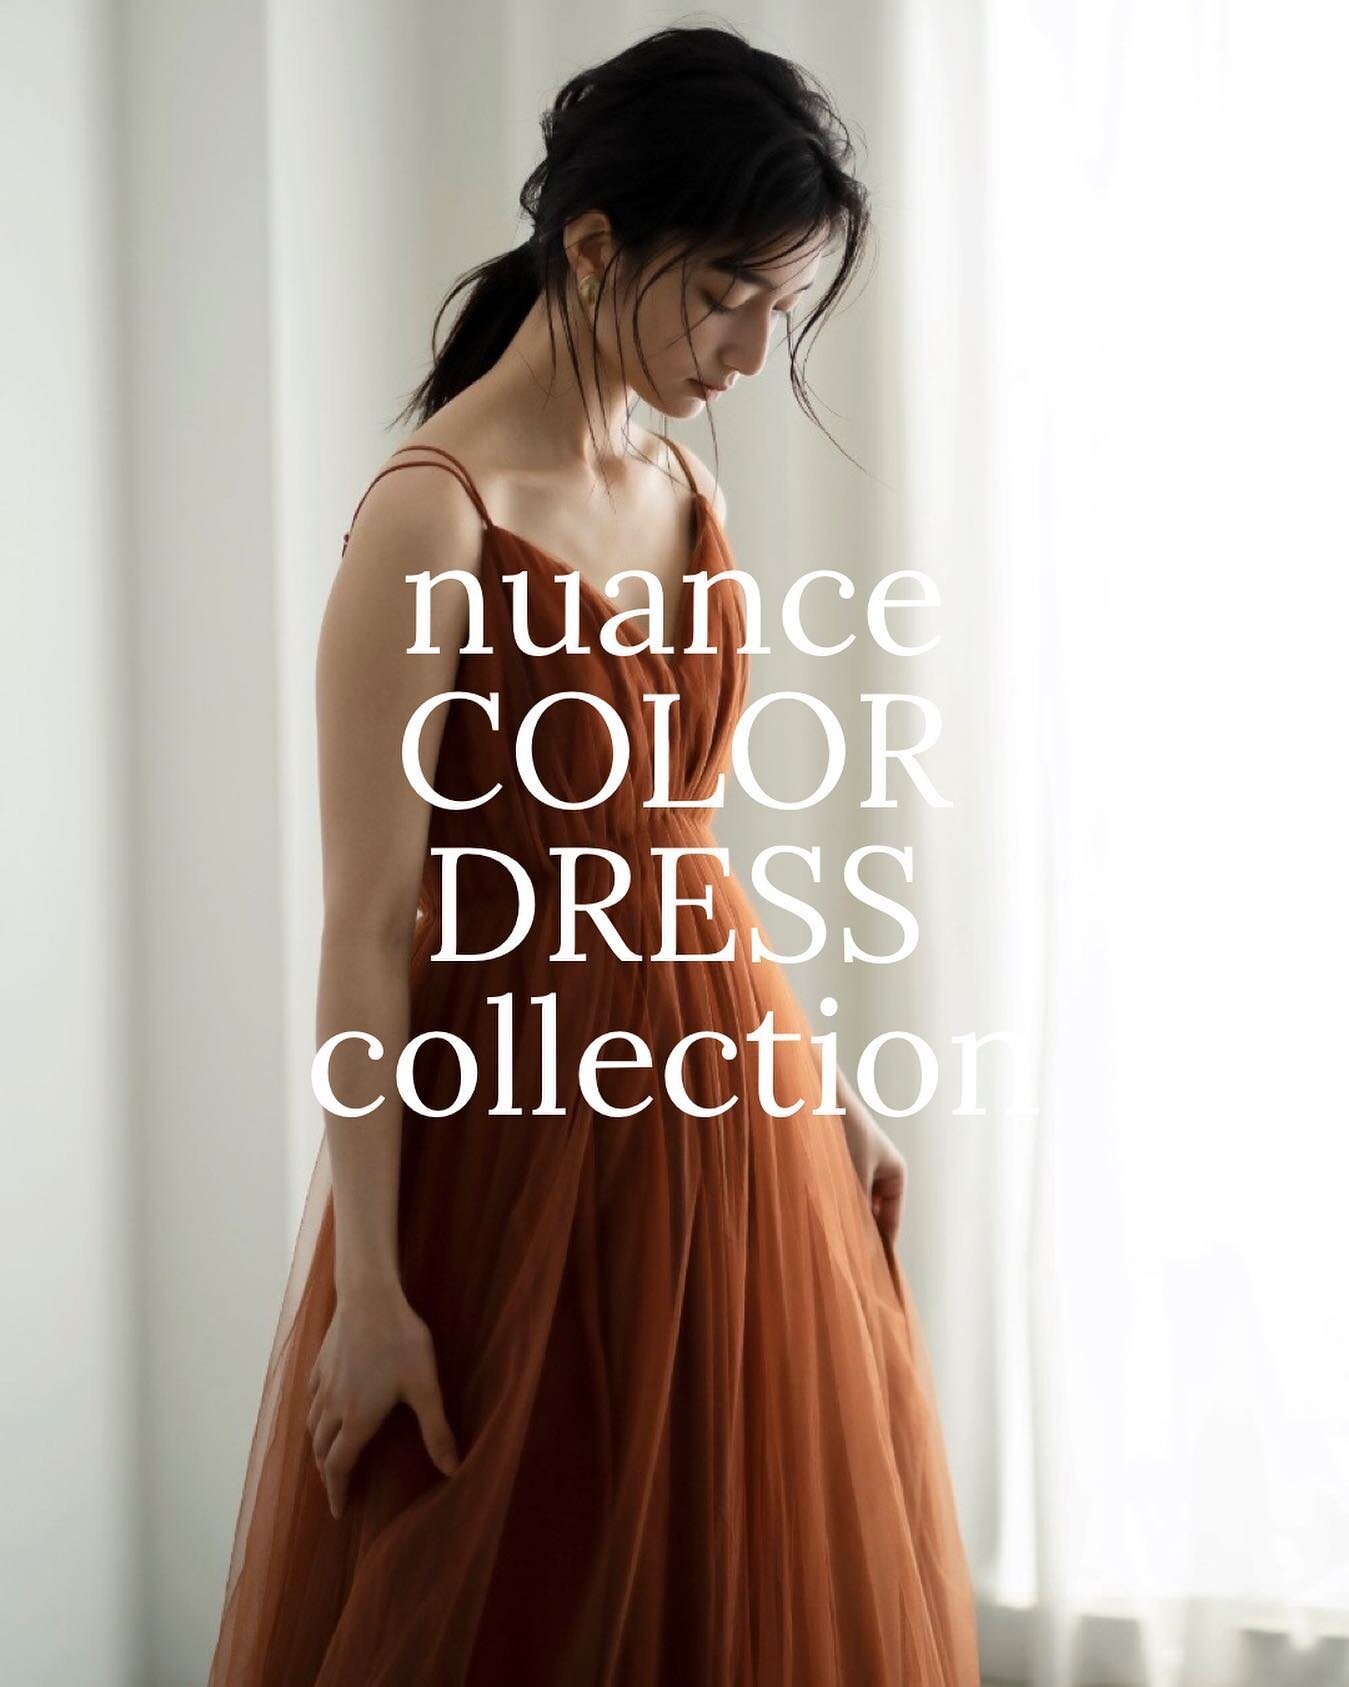 nuance Color Dress Collection
・
Nuanceのカラードレスは、その名の通りニュアンスカラーのカラードレス.
ニュアンスのドレスから、人気のカラードレスをご紹介します👗

本日は、ニュアンスカラーのレッドテラコッタカラー
特に秋冬で人気のドレスです🍂

ニュアンスのカラードレスは、全てオリジナルのデザインで、オリジナルカラーでお染めした生地でアトリエでお作りしています、是非お召しになってみてください.

𓂃
#nuancedress_japan
#